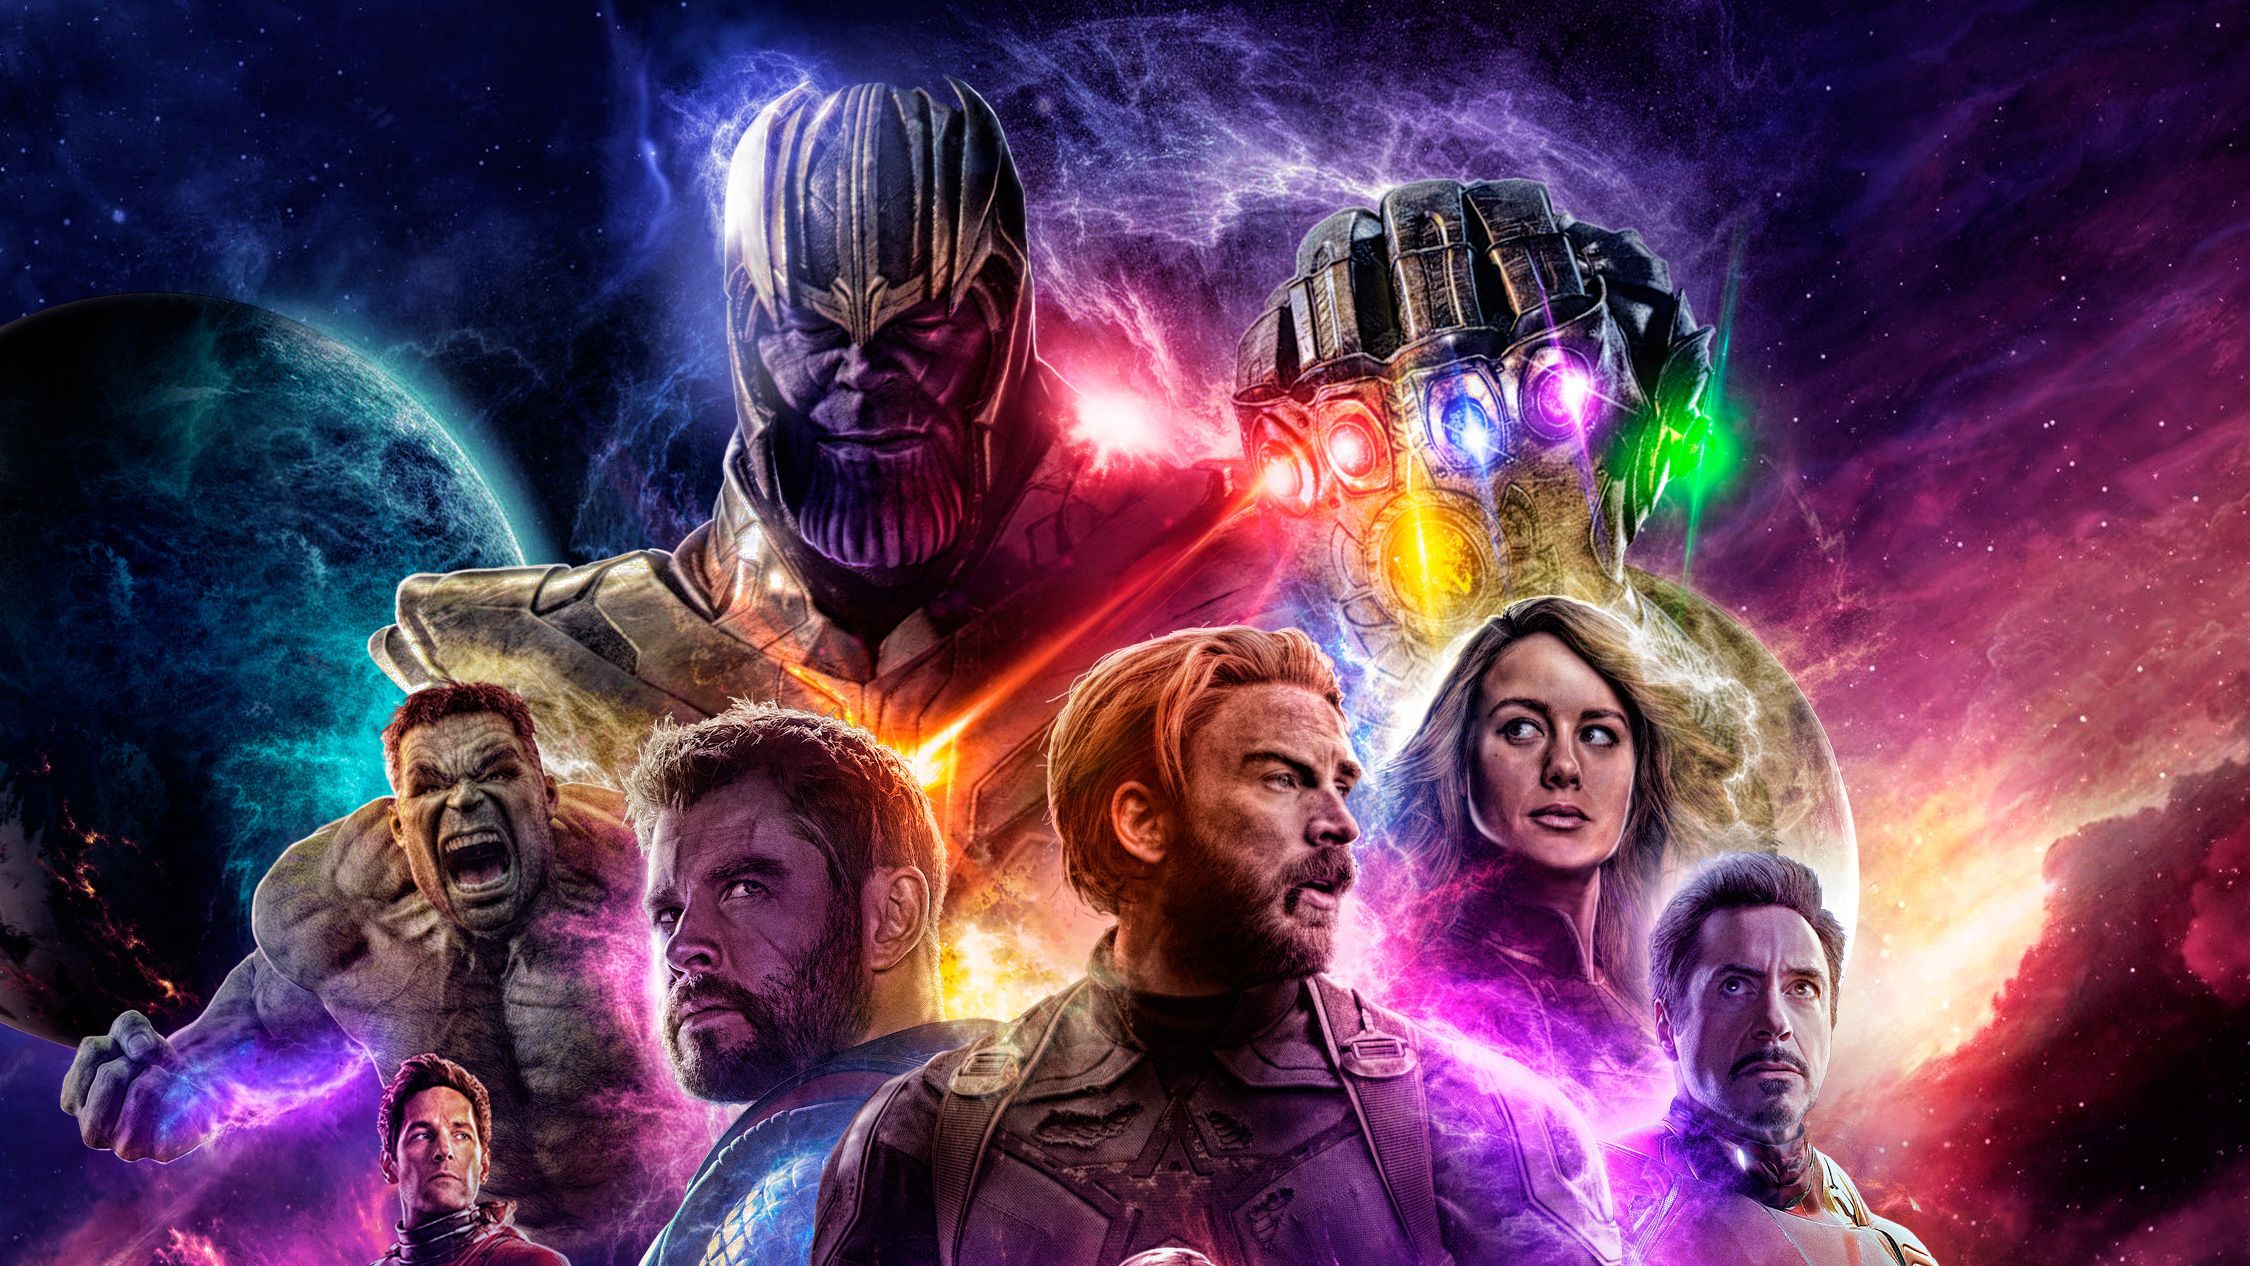 După ce a devenit cea mai mare lansare din istorie cu 1,2 mld. dolari în primul weekend, „Avengers: Endgame” de la Disney poate depăşi 2 mld. dolari în al doilea weekend